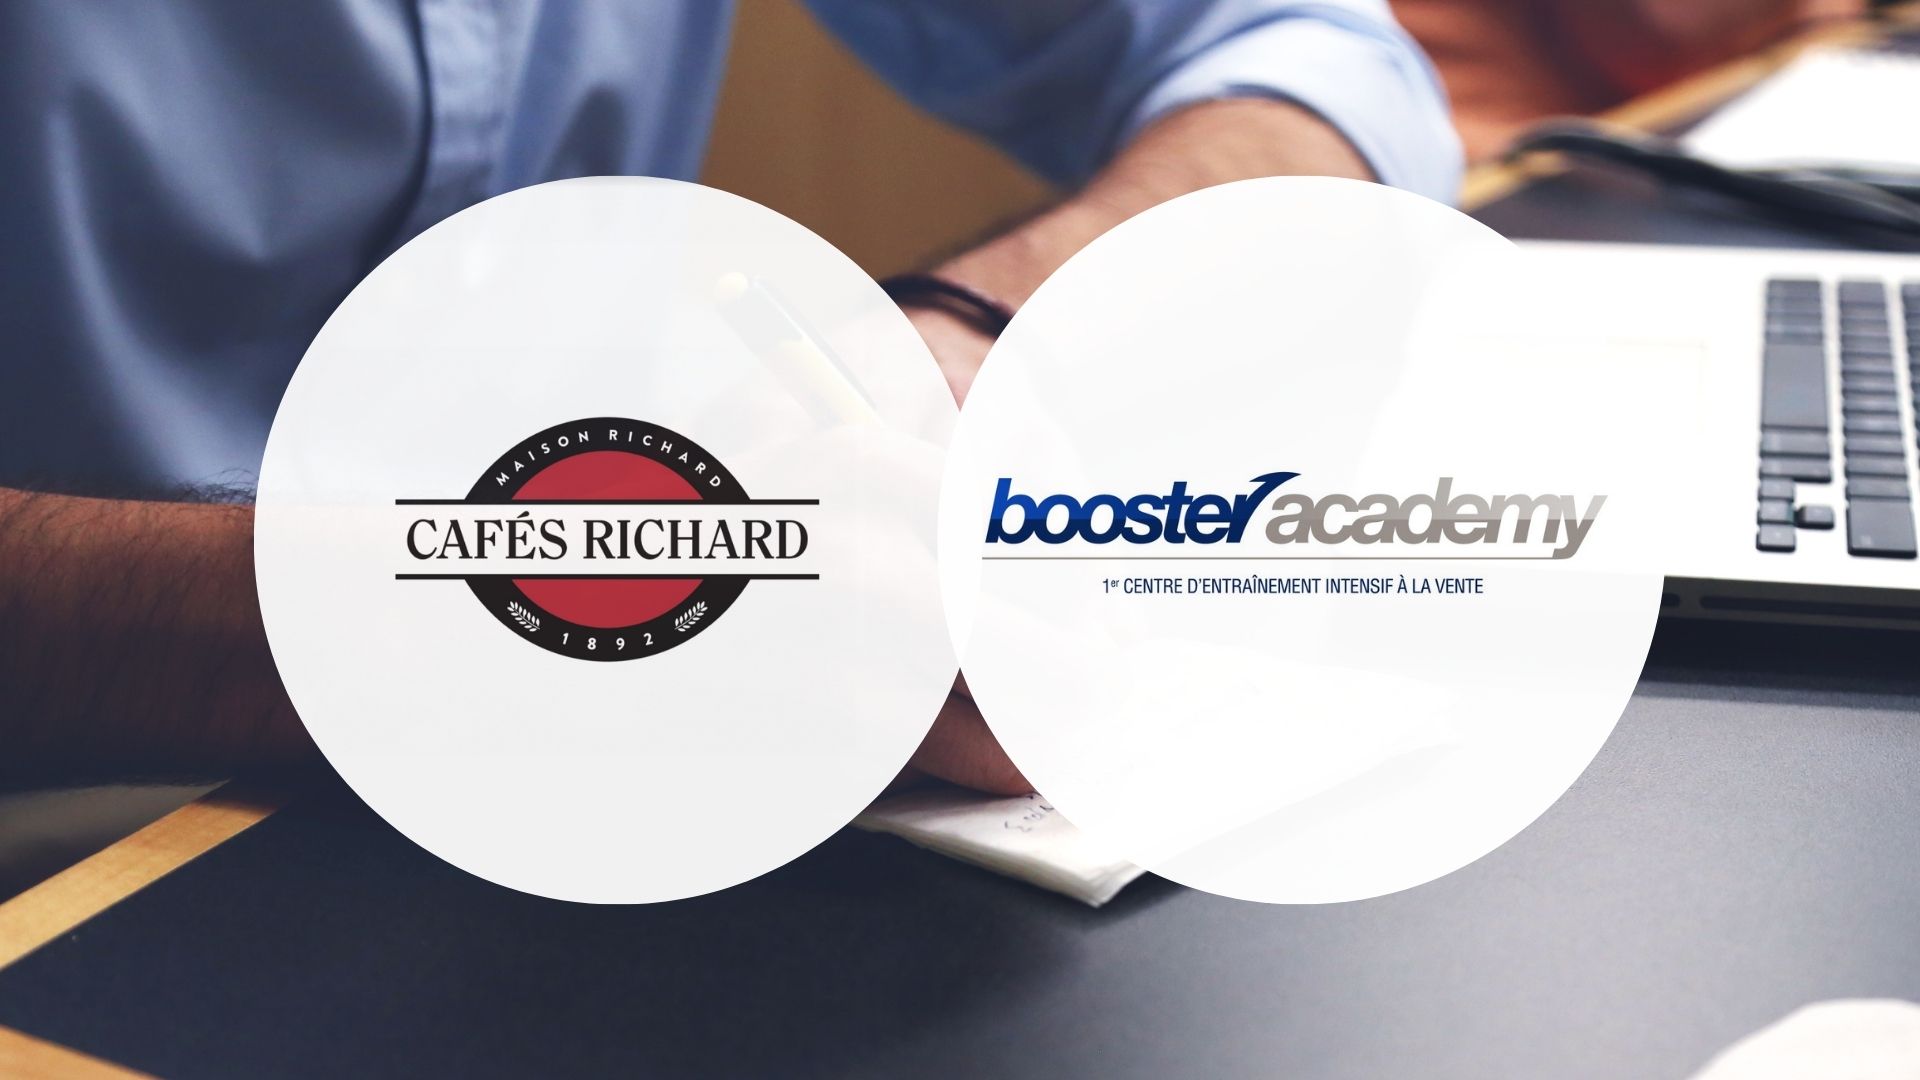 Café Richard x Booster Academy